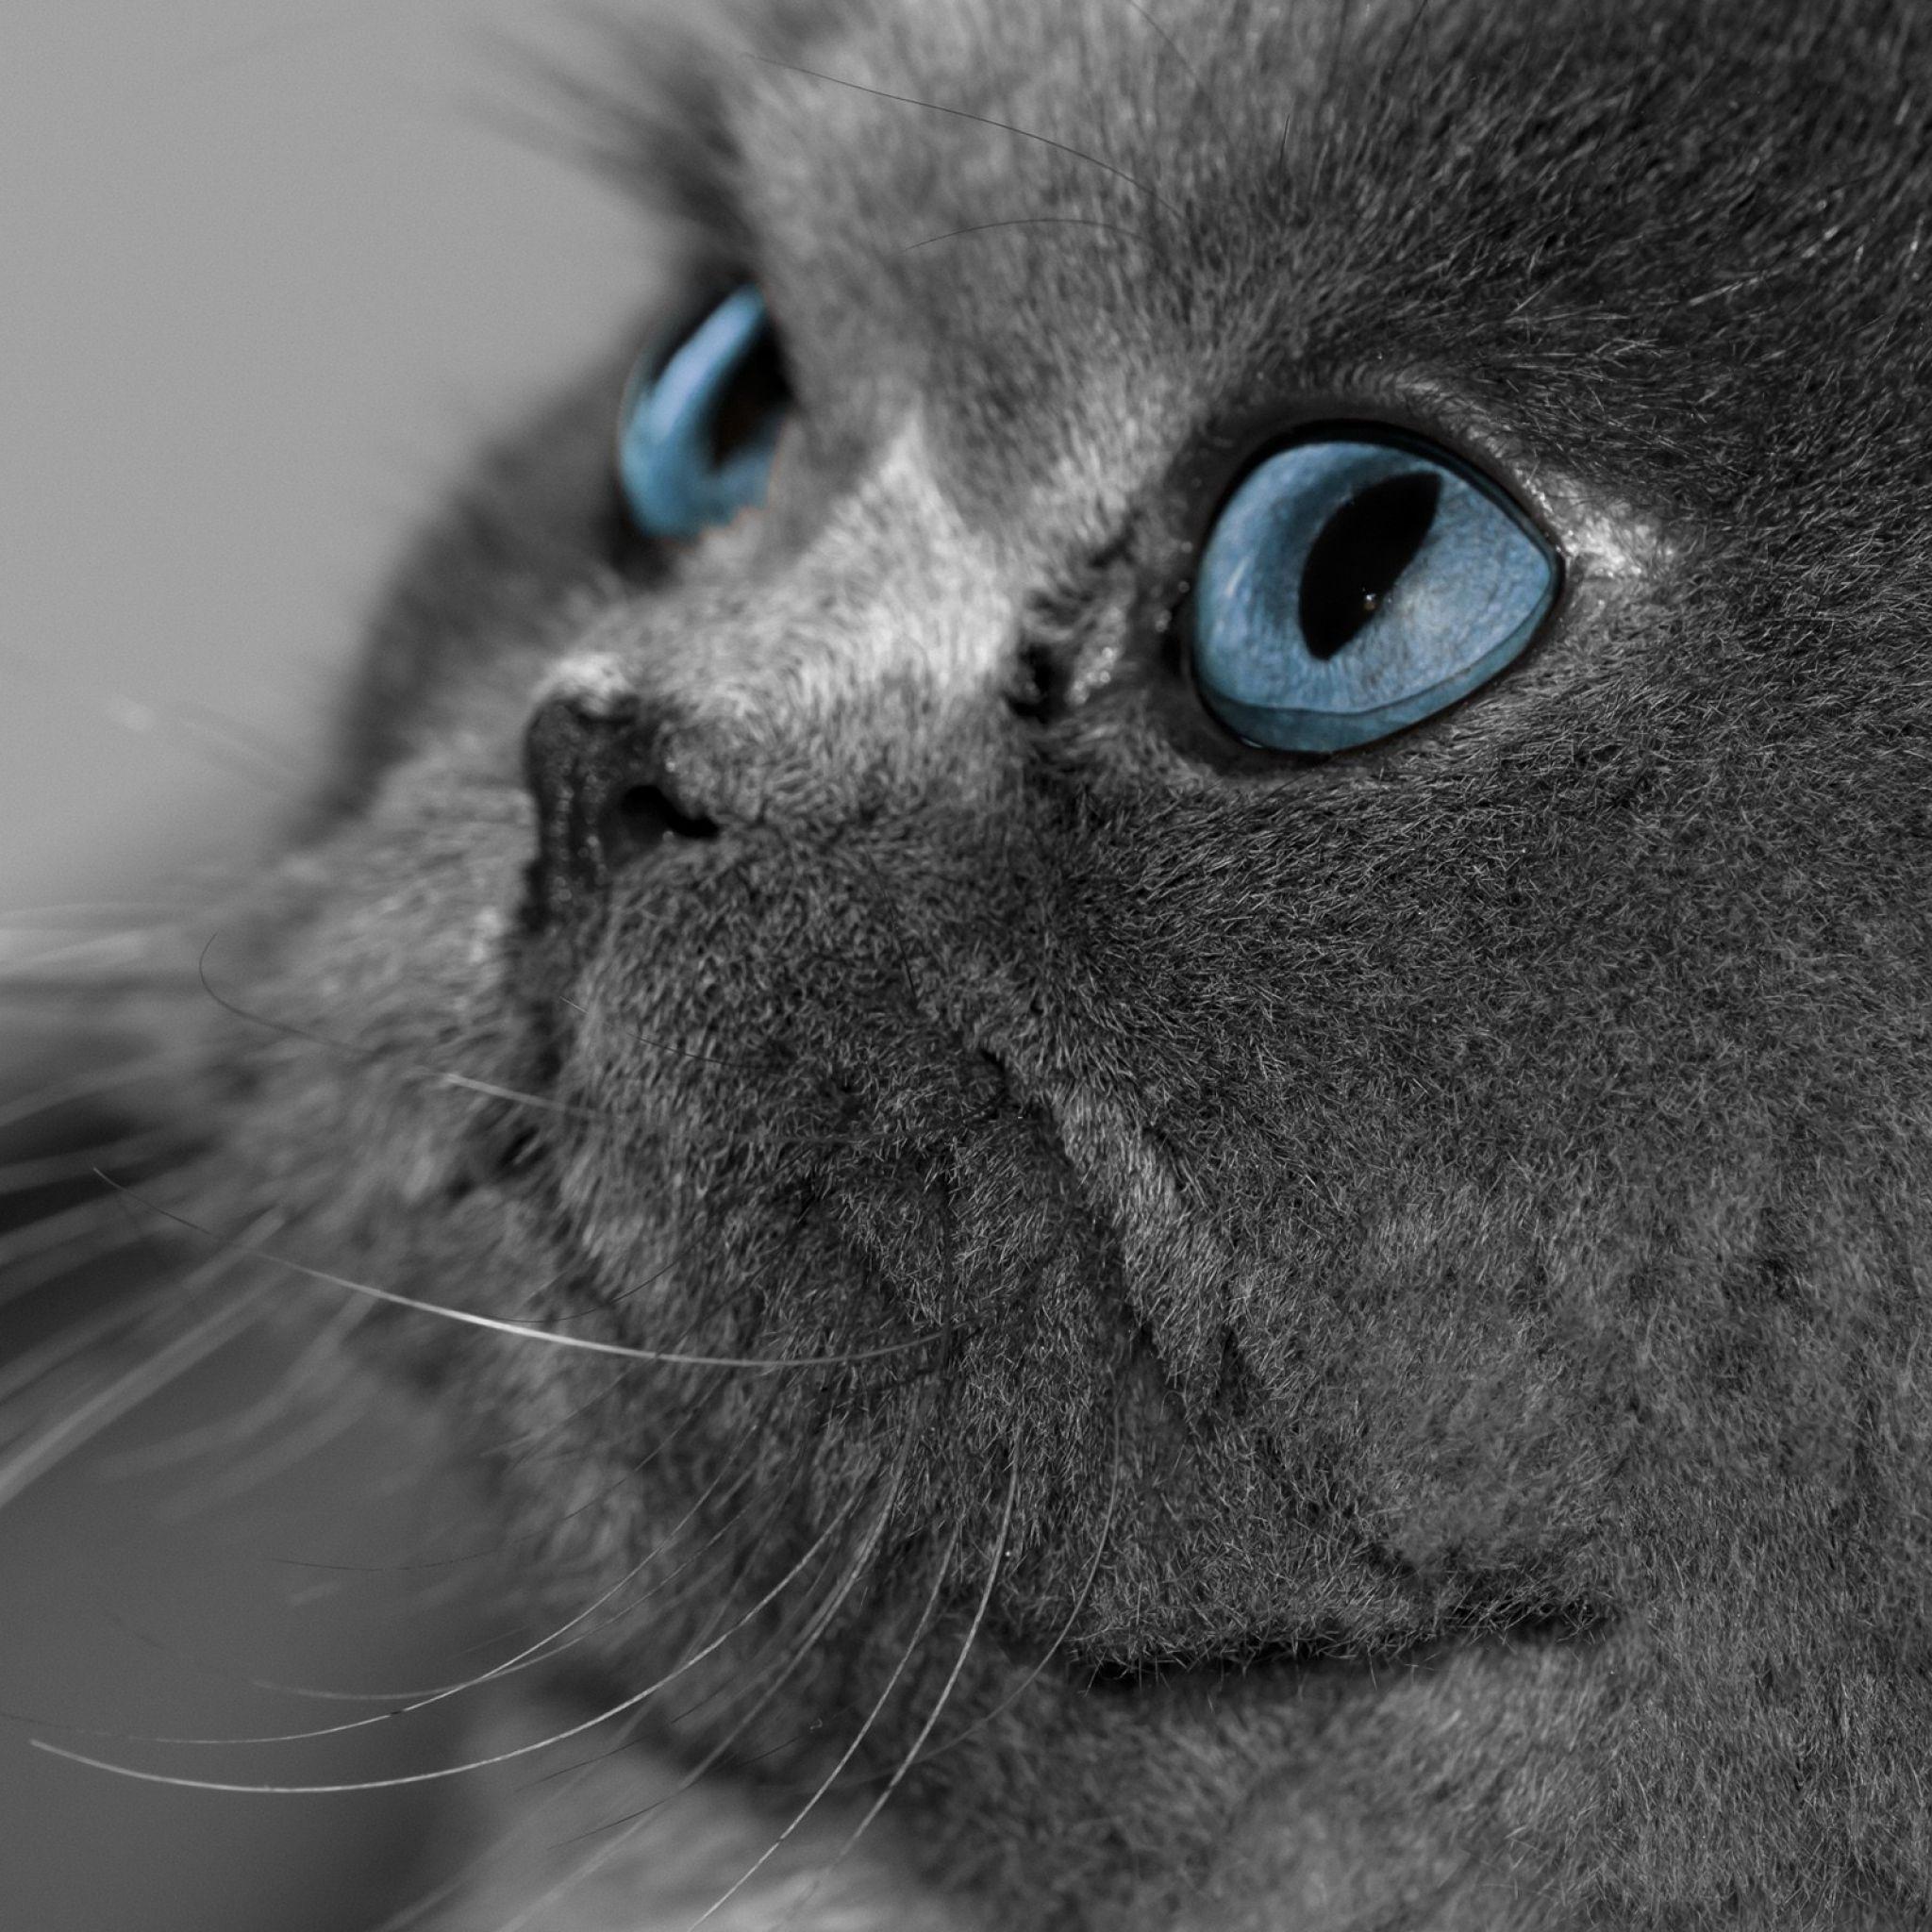 2048x2048 Tải xuống Hình nền 2048x2048 Con mèo, Lông mượt, Màu xám, Mắt, Mắt xanh, Hồ sơ iPad Air mới, 4, 3, iPad mini Retina H. Mèo có mắt xanh, Hình nền mèo xám, Mèo xám